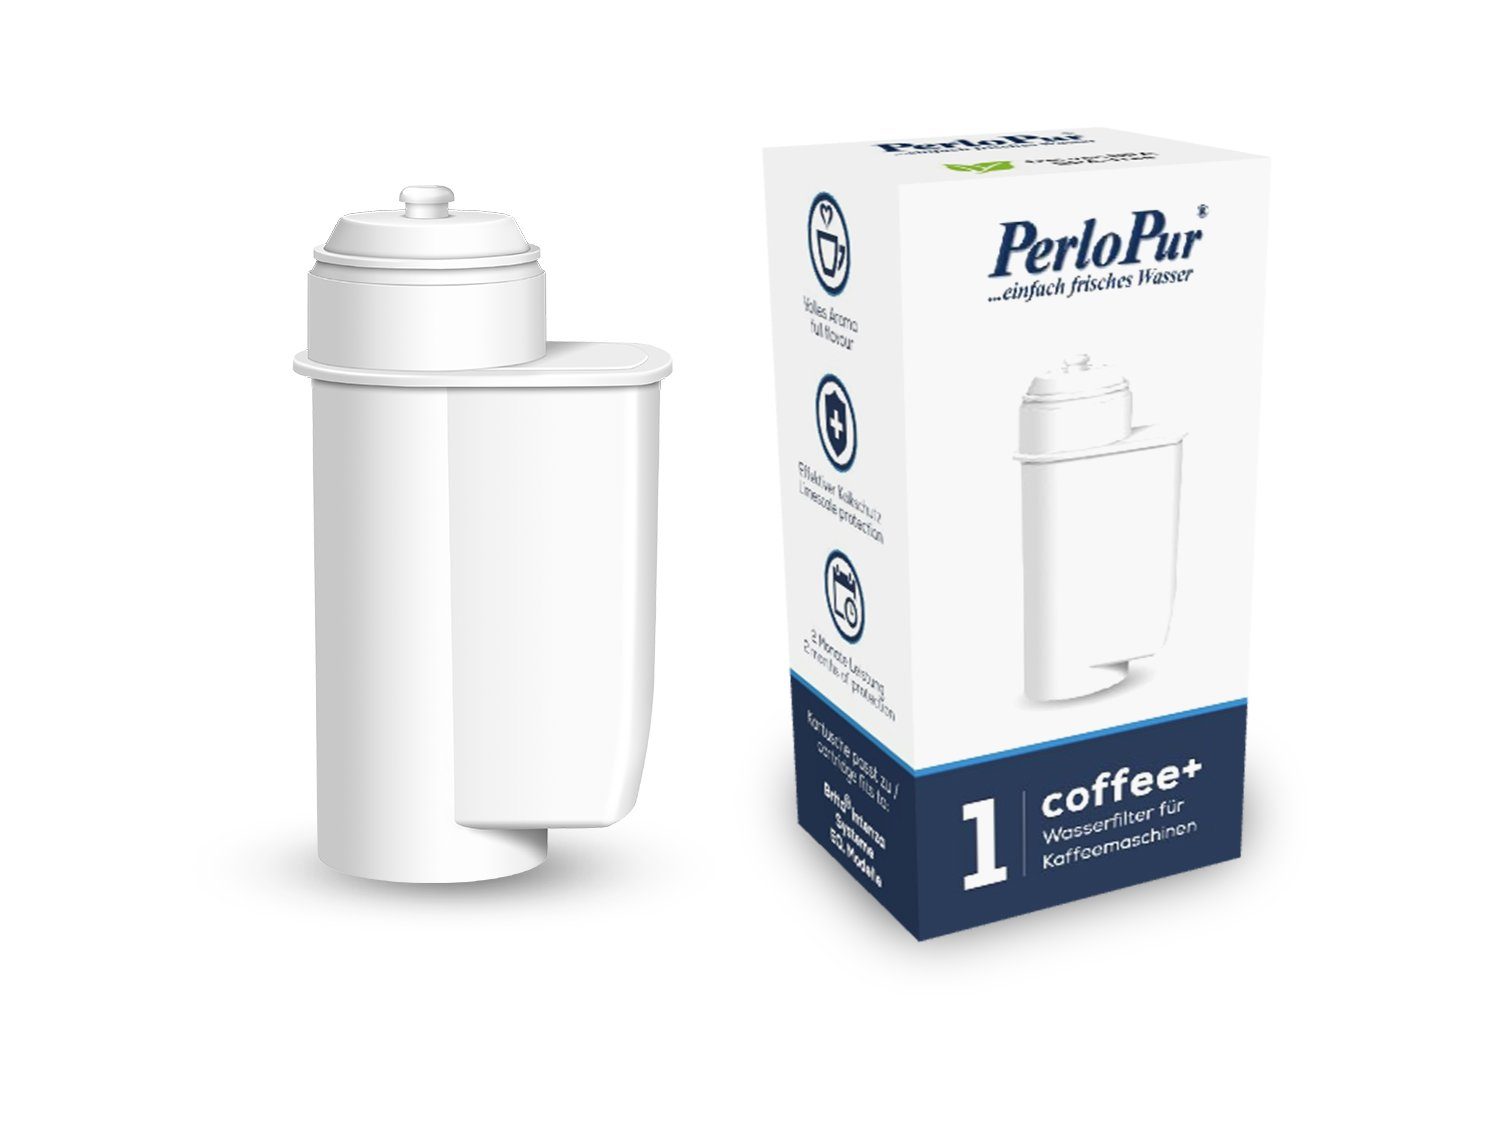 PearlCo Wasserfilter Coffee+ Pack 12 komp. mit Brita Intenza  Kaffeevollautomaten, Zubehör für Siemens EQ Series, TZ70003, Bosch TCZ7003, Brita  Intenza Filter